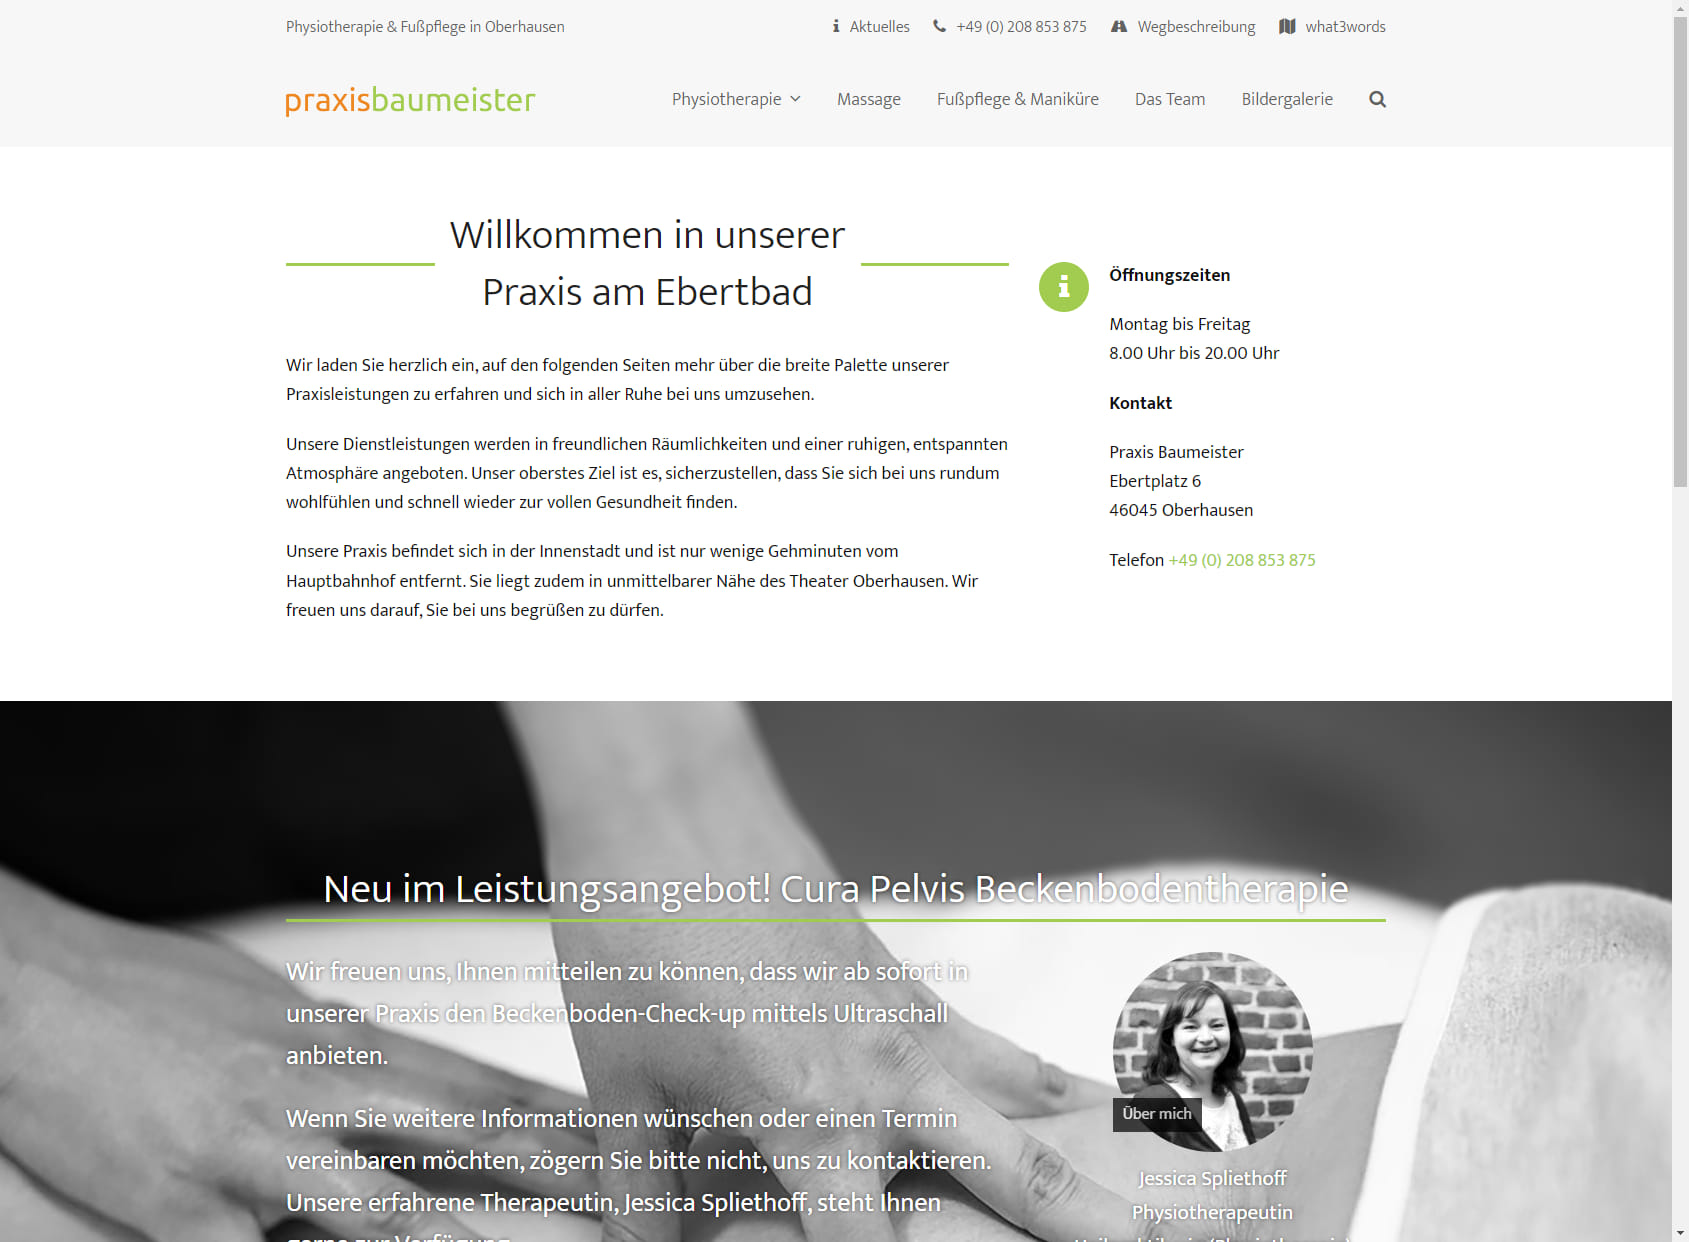 Physiotherapie Knut Baumeister - Physiotherapie, Massage & Fußpflege in Oberhausen